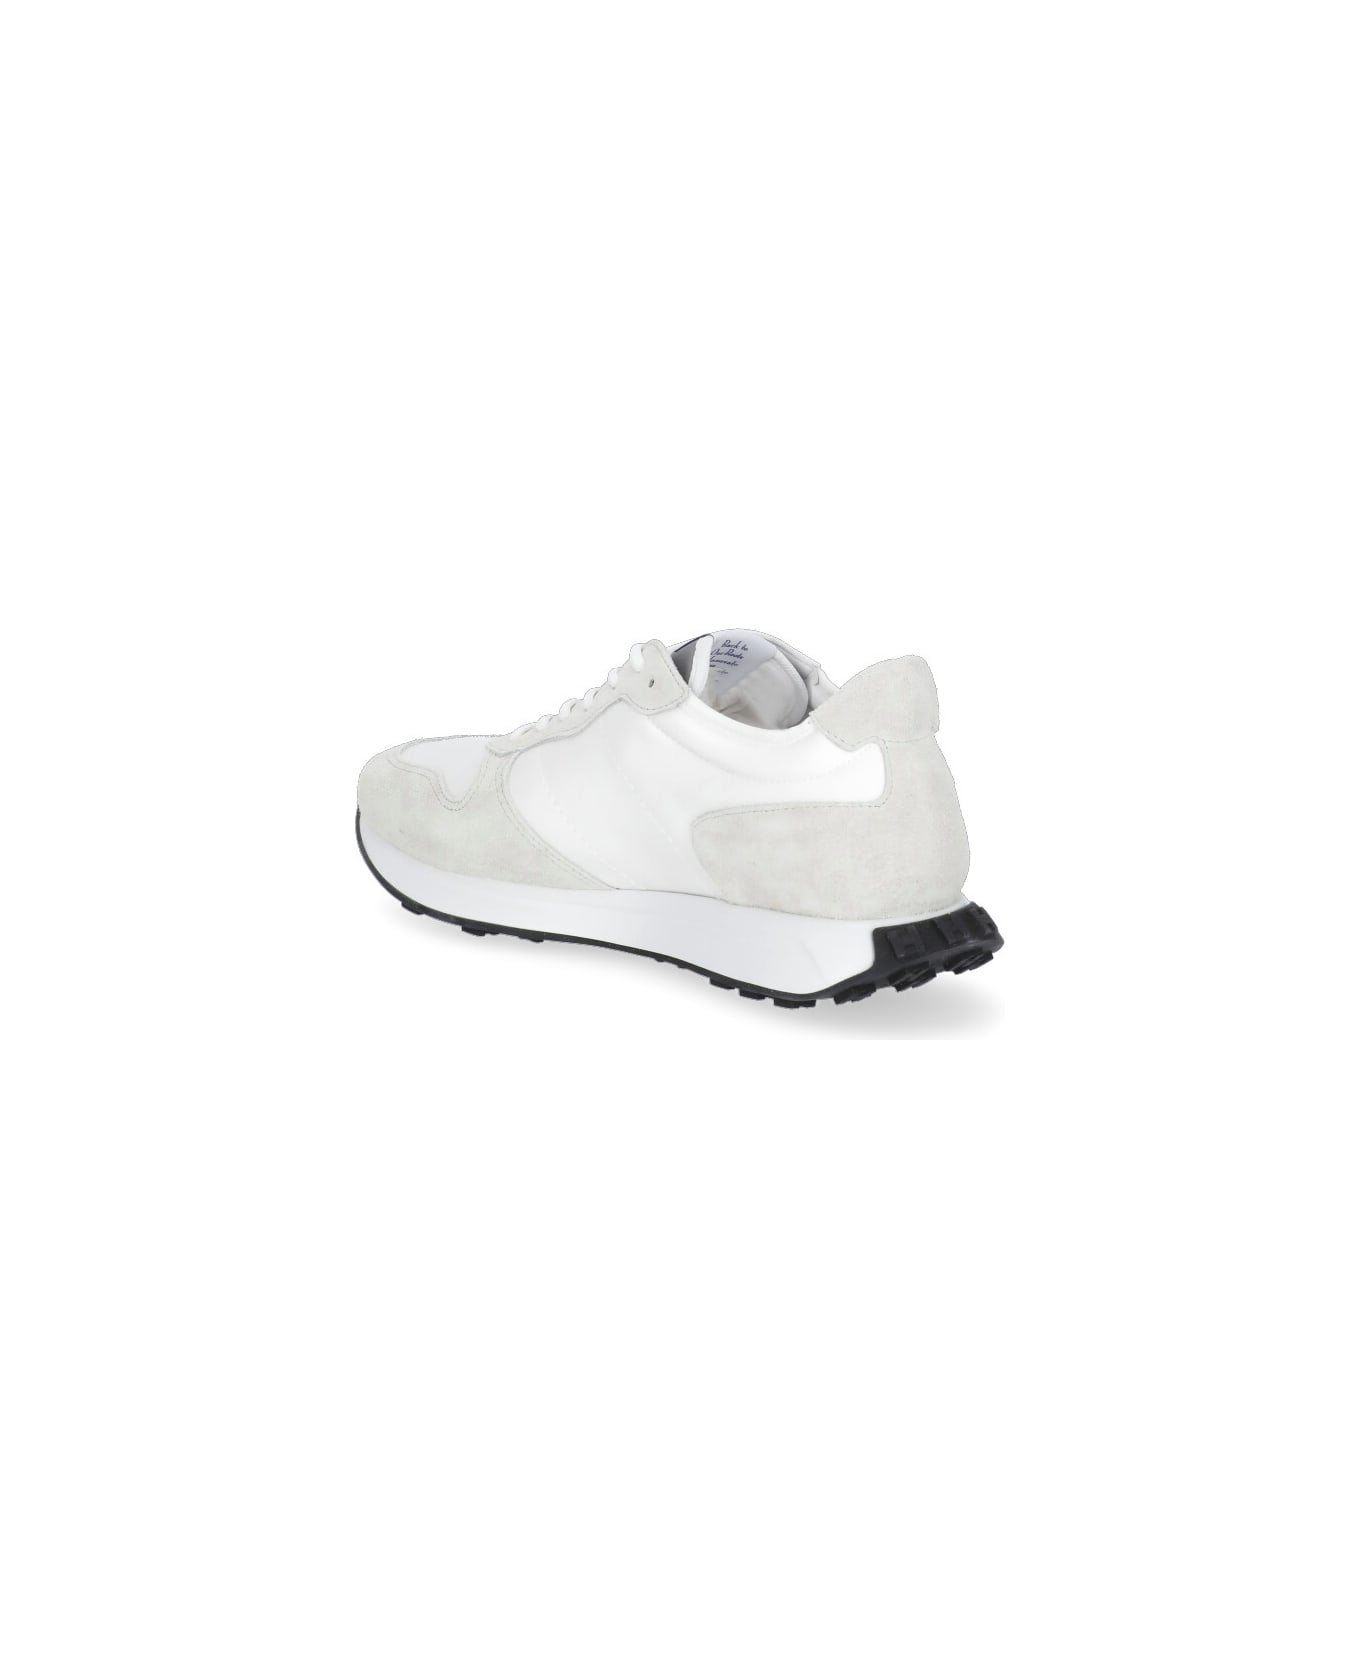 Hogan H601 Sneakers - White スニーカー